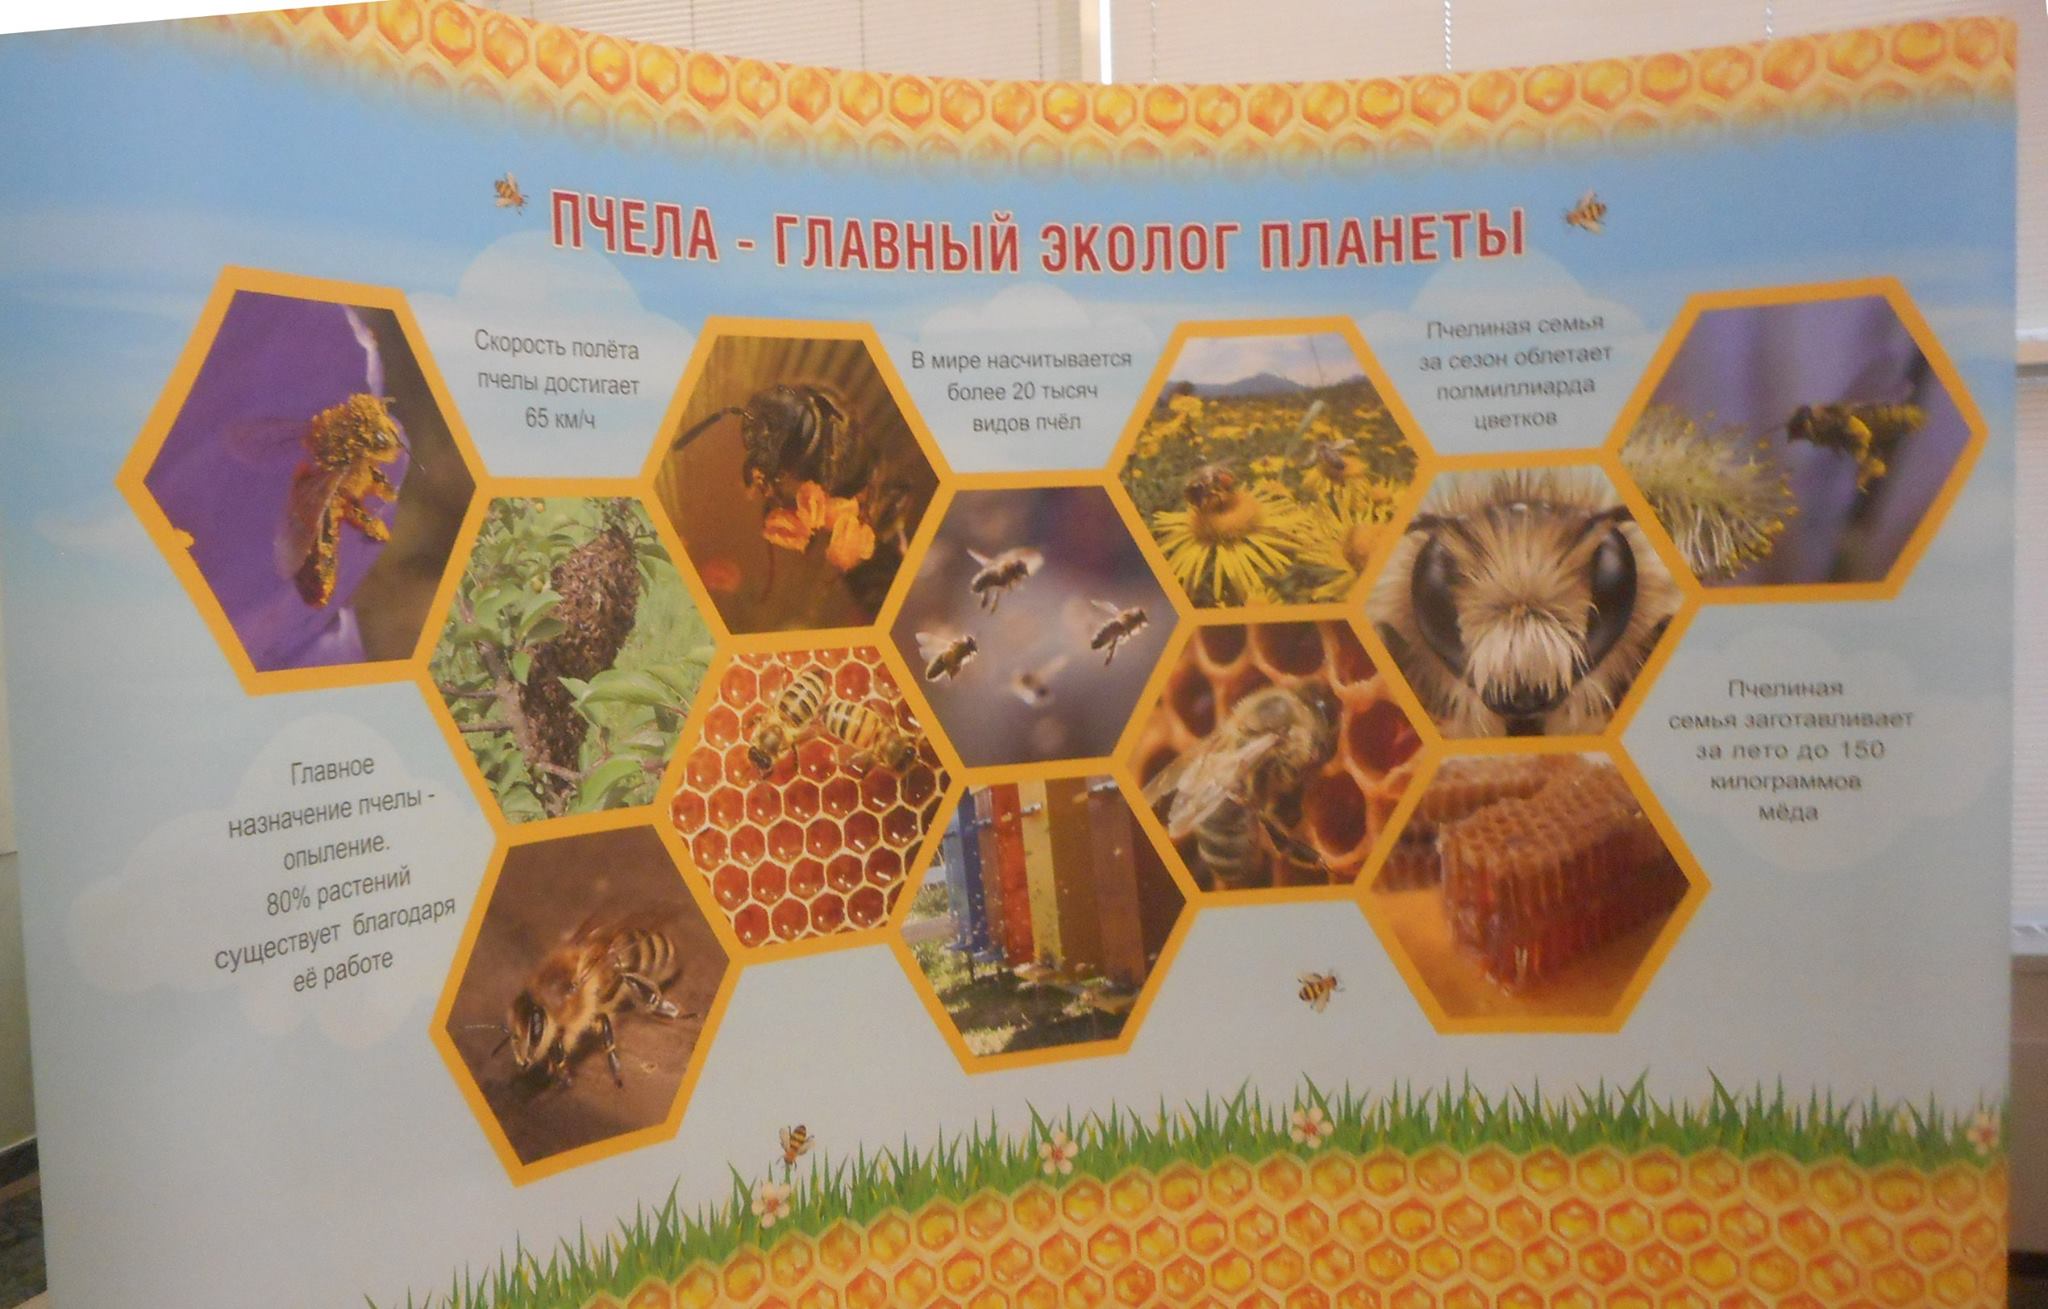  В Госдуме России прошла выставка мёда - фото 4